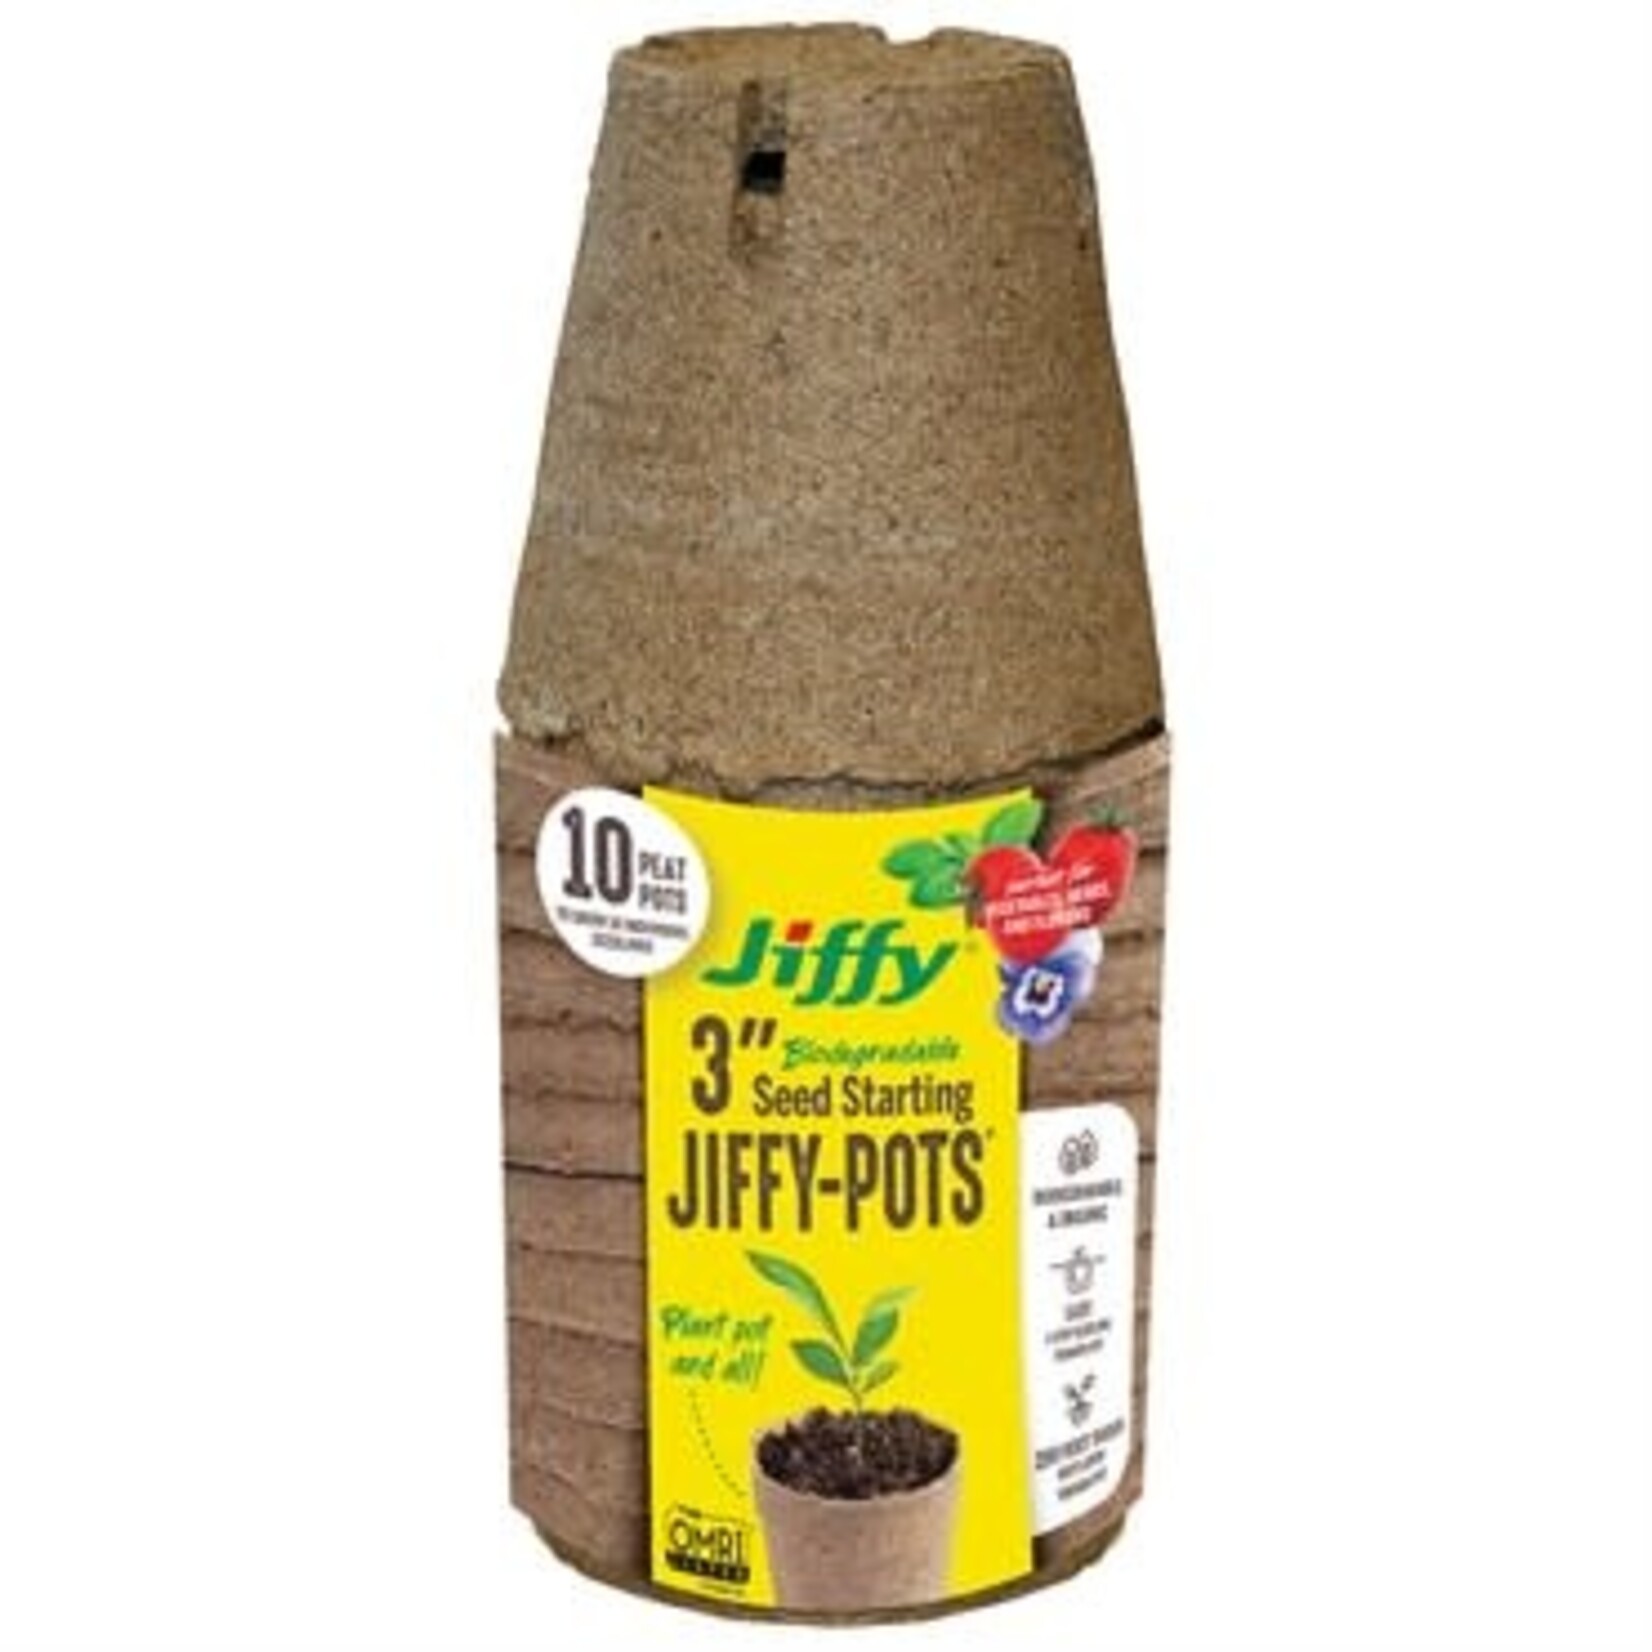 Jiffy Jiffy 10pk 3" Round Peat Pots